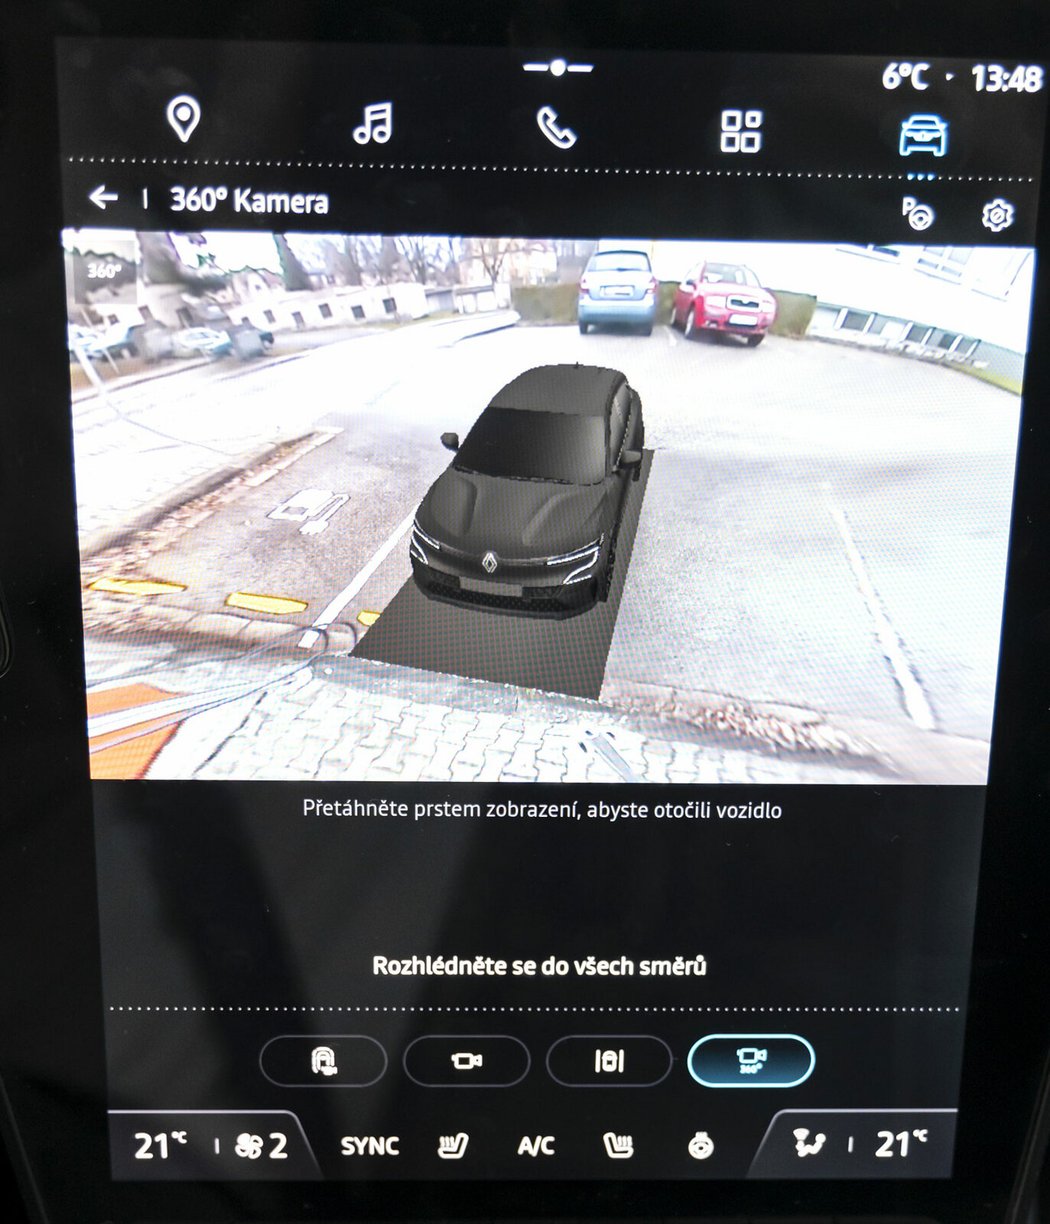 Navzdory kompaktním rozměrům auta se hodí 360stupňová kamera kolem celé karoserie zejména u zajíždění k nabíječkám. Díky ní se lze například na vůz podívat úplně zvenčí.